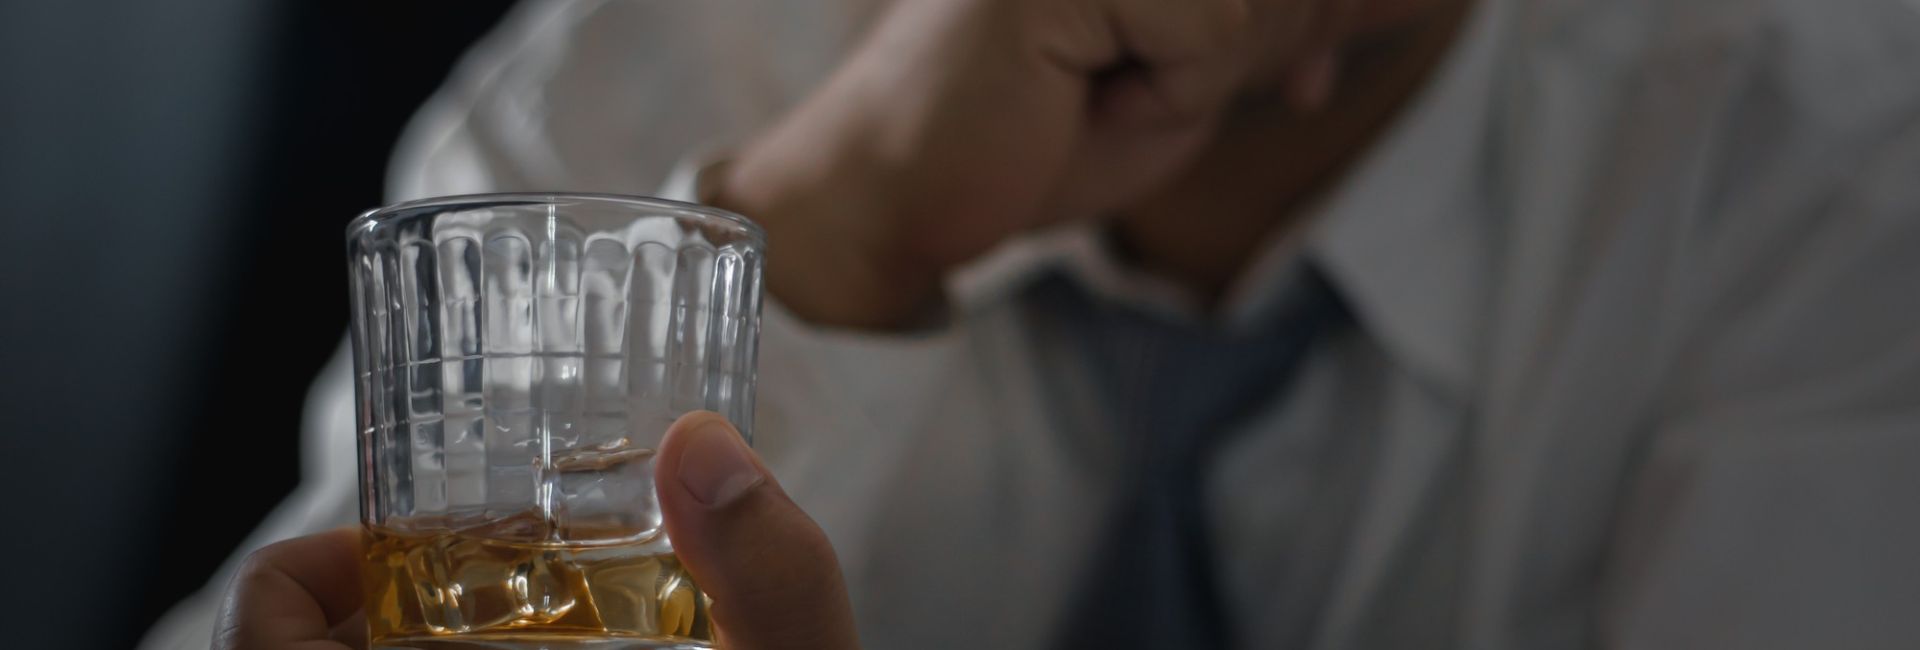 Quanto custa a internação de um alcoólatra?